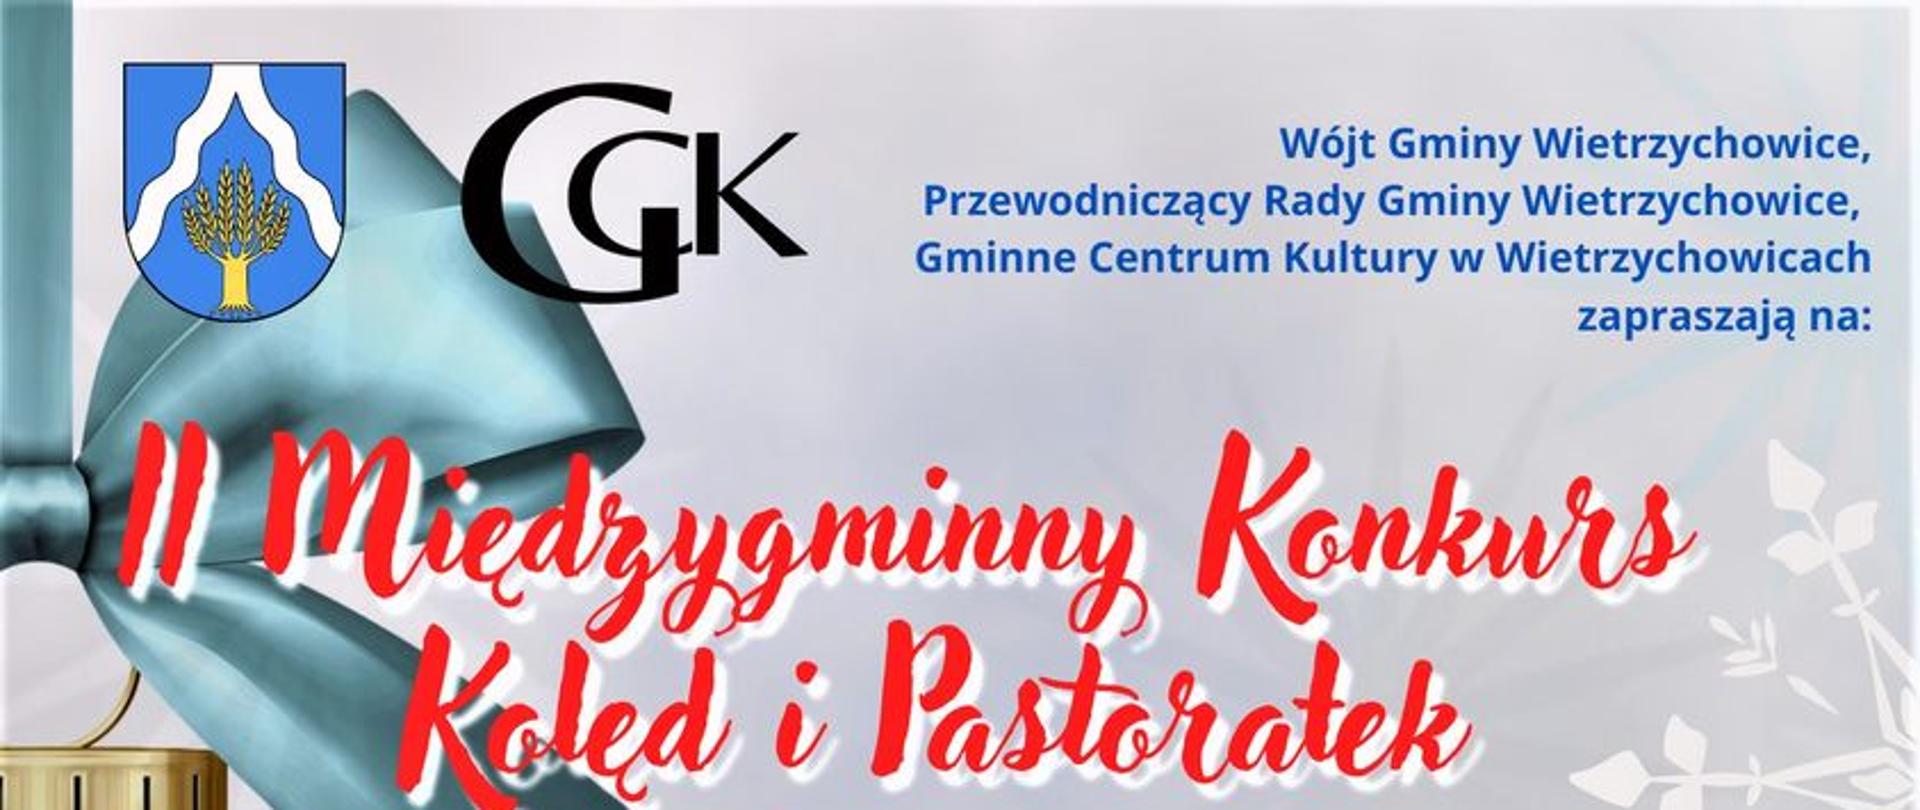 Plakat z informacjami o II międzygminnym konkursie kolęd i pastorałek w Wietrzychowicach